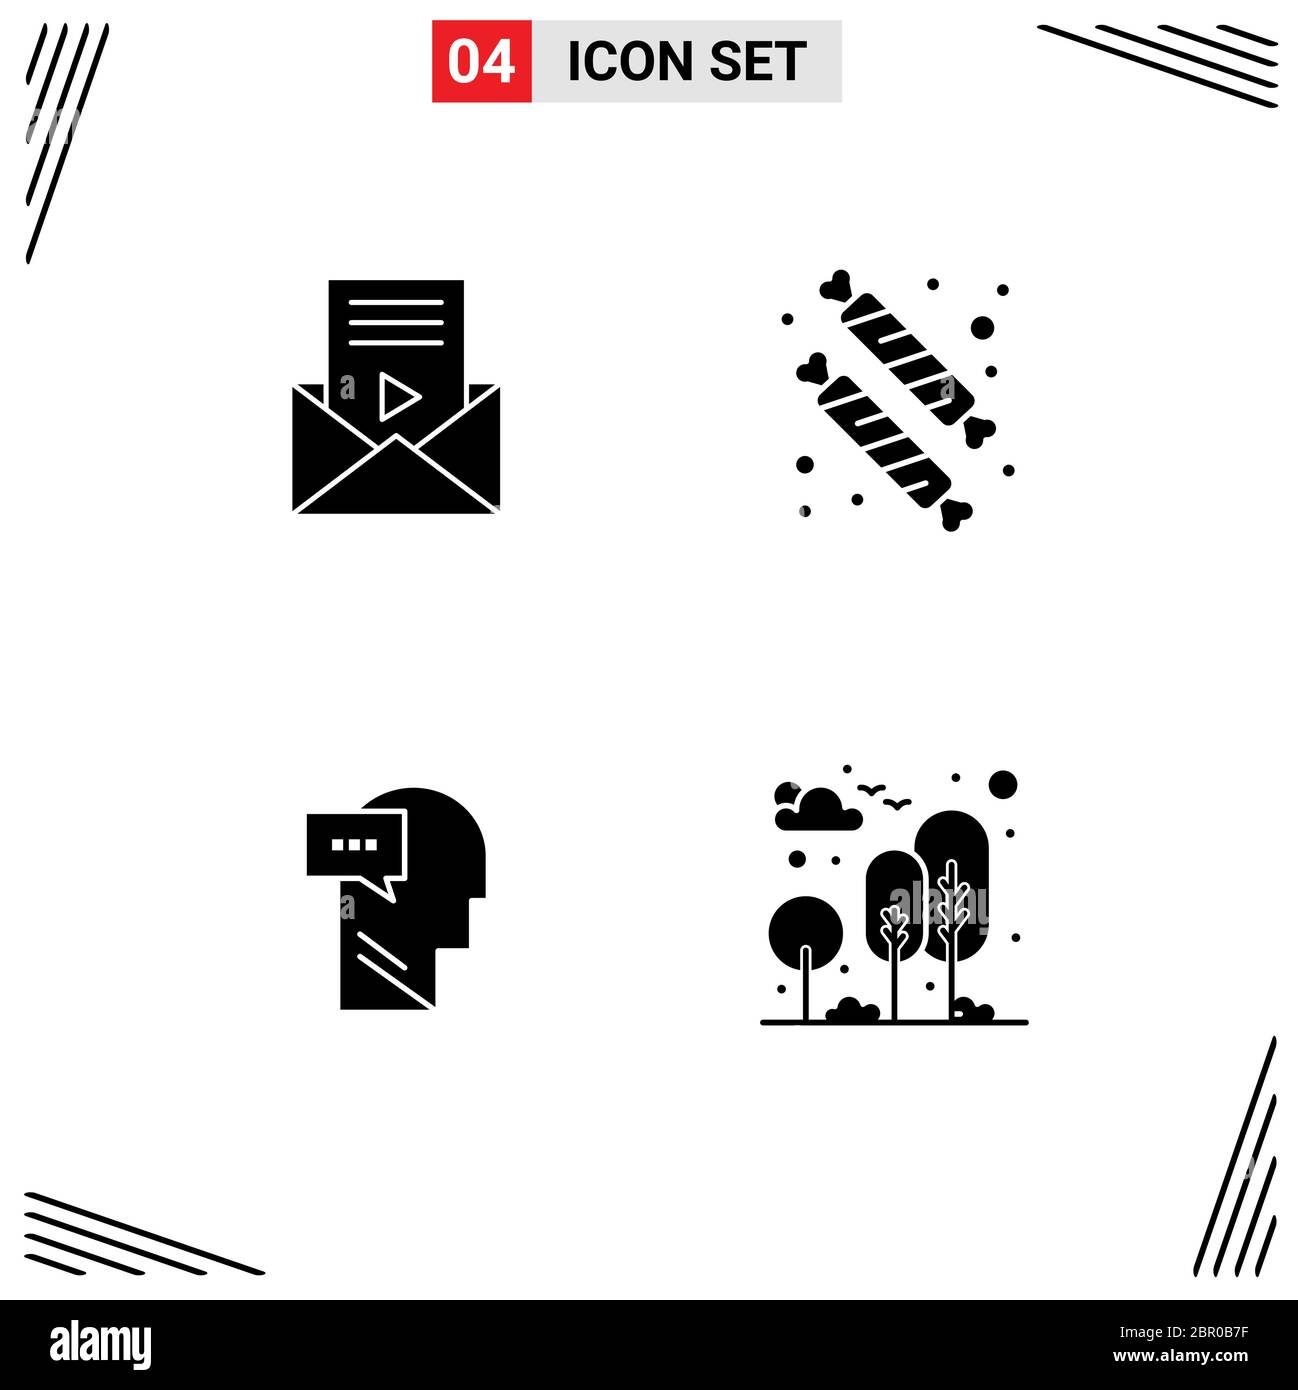 Jeu de 4 icônes d'interface utilisateur modernes symboles signes pour le courrier, dialogue, lecteur vidéo, dessert, tête modifiable éléments de conception vectorielle Illustration de Vecteur